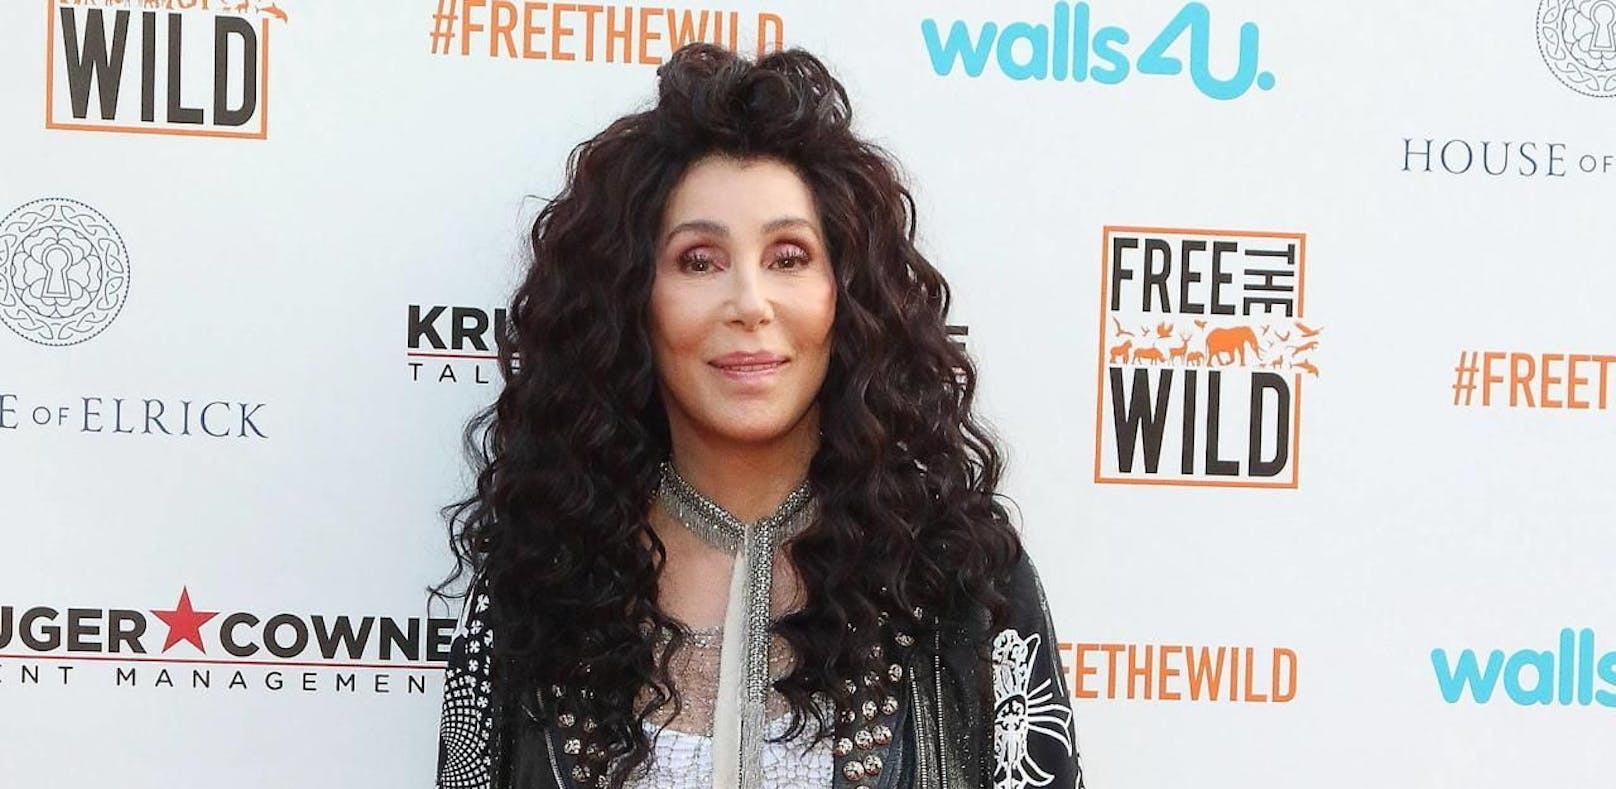 Drogencops stürmten Villa von Superstar Cher